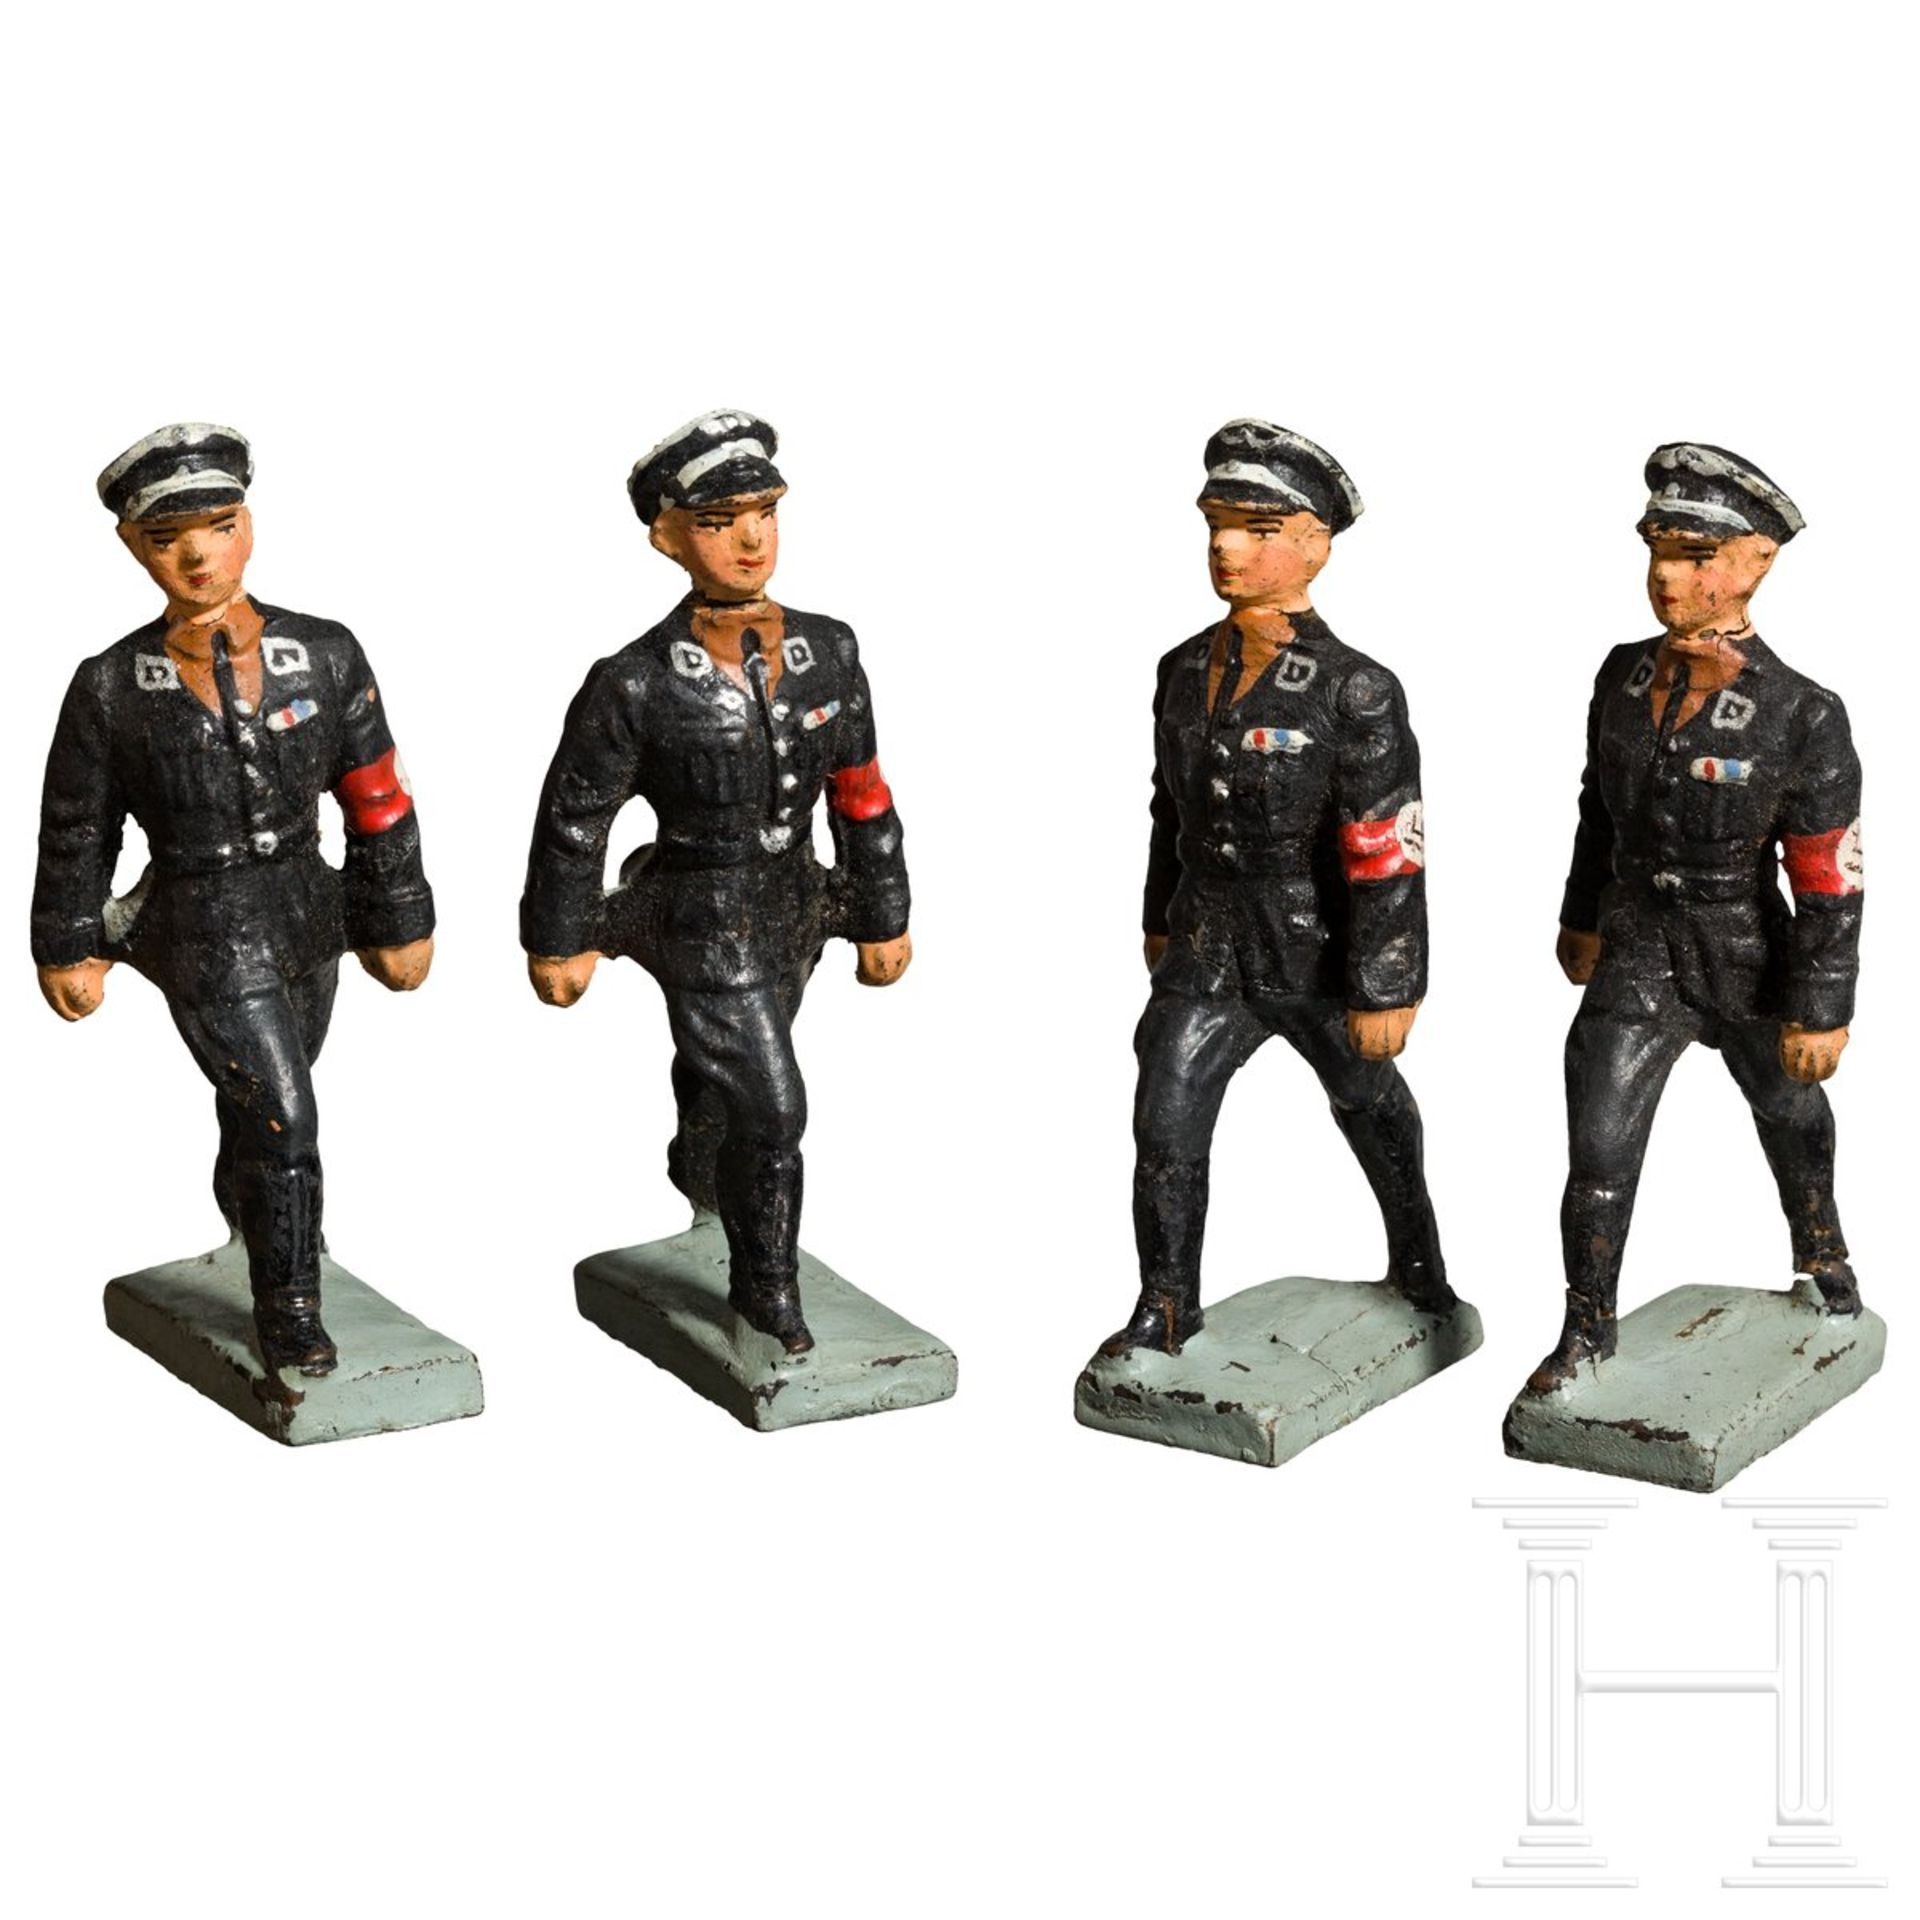 <de>Vier Lineol-SS-Führer im Marsch mit durchgestreckten Armen<br>Konvolut Lineol, 7 cm-Serie, Masse